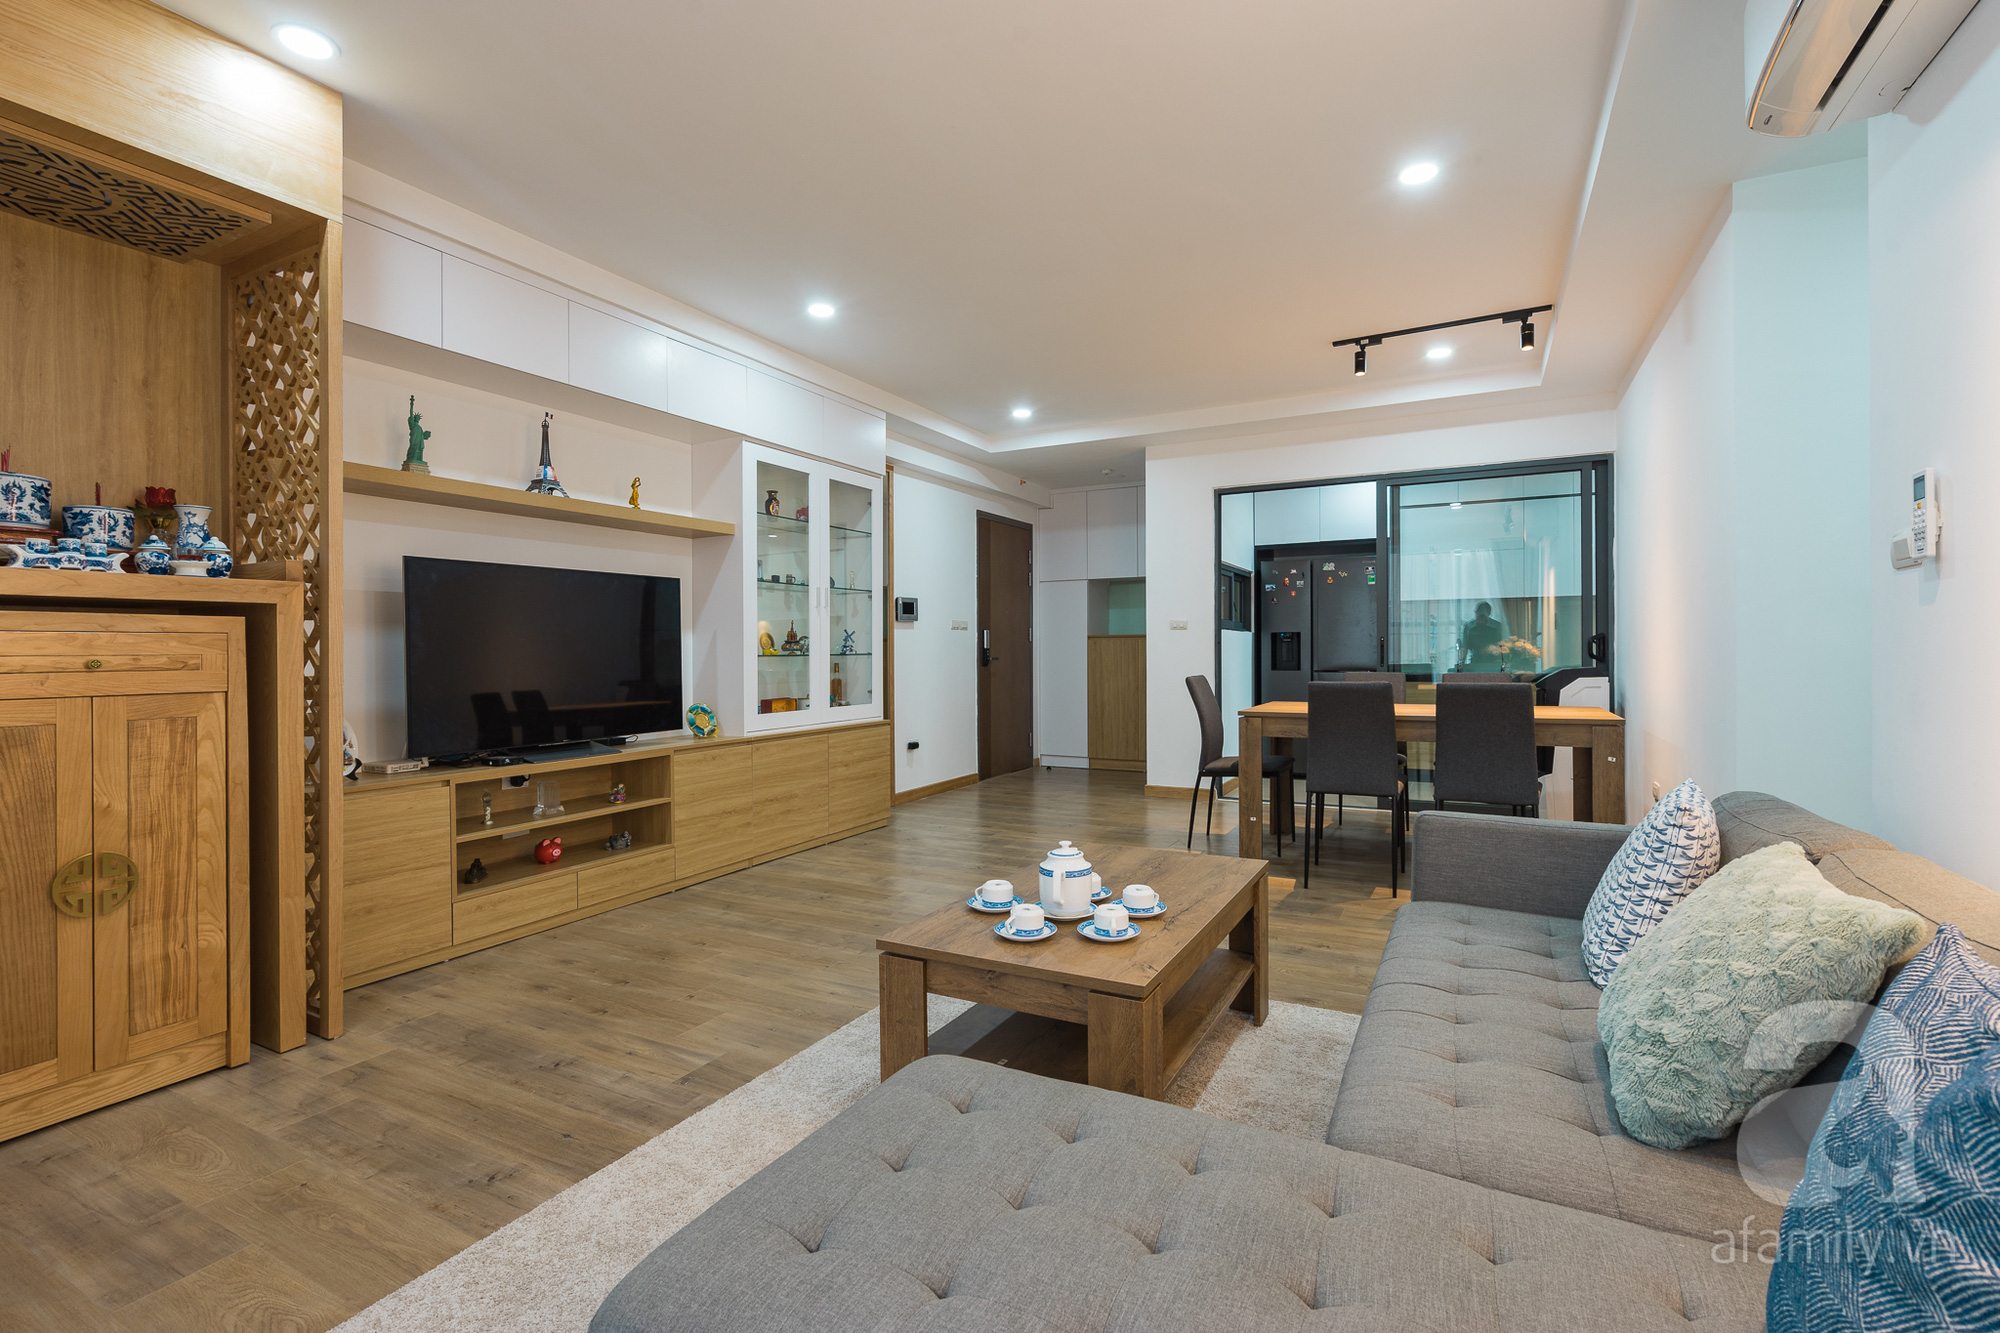 Tư vấn thiết kế căn hộ 110m2 với 3 phòng ngủ tiện nghi ở chung cư Ecolife, Tây Hồ với chi phí hoàn thiện nội thất 290 triệu - Ảnh 3.